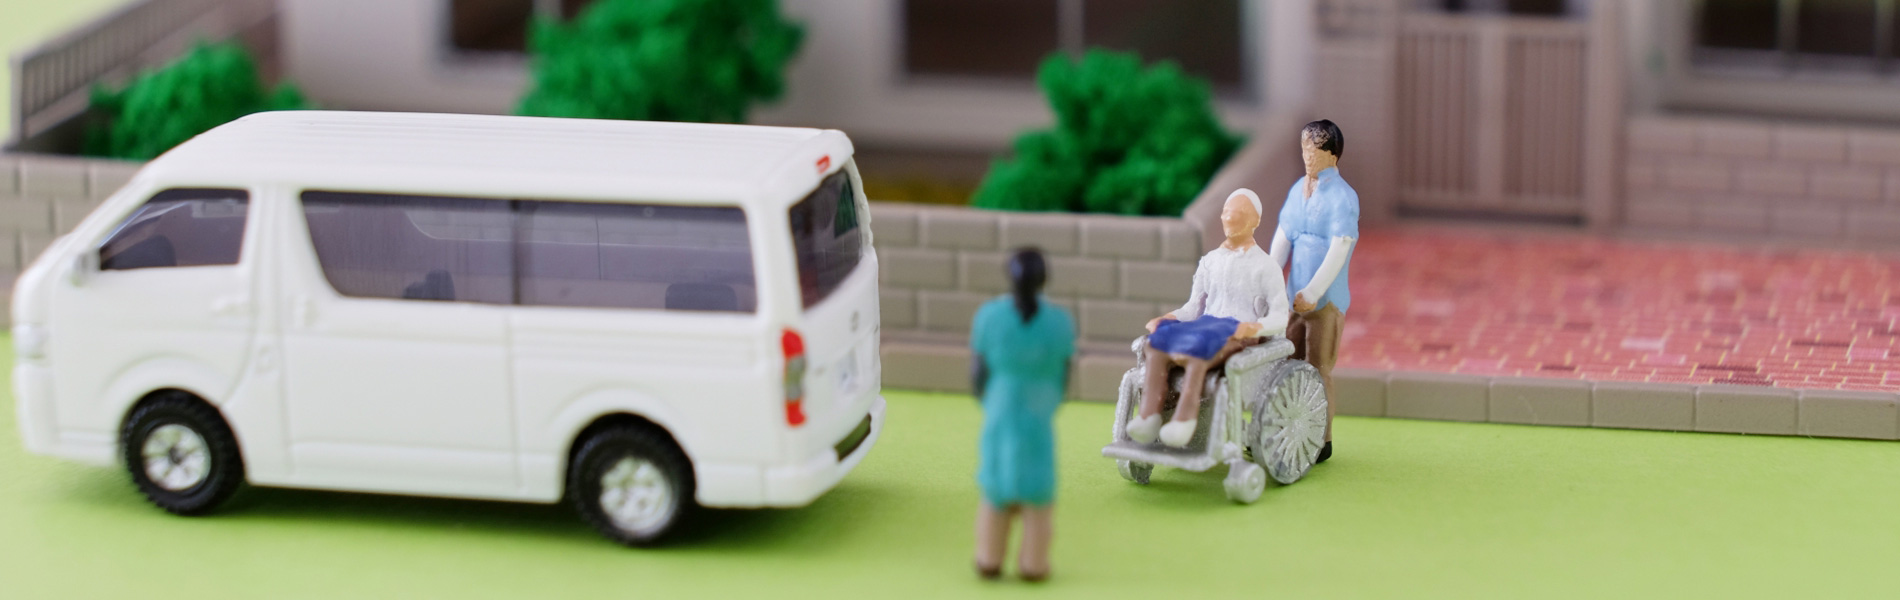 介護タクシーの車椅子での安全・安楽な移動